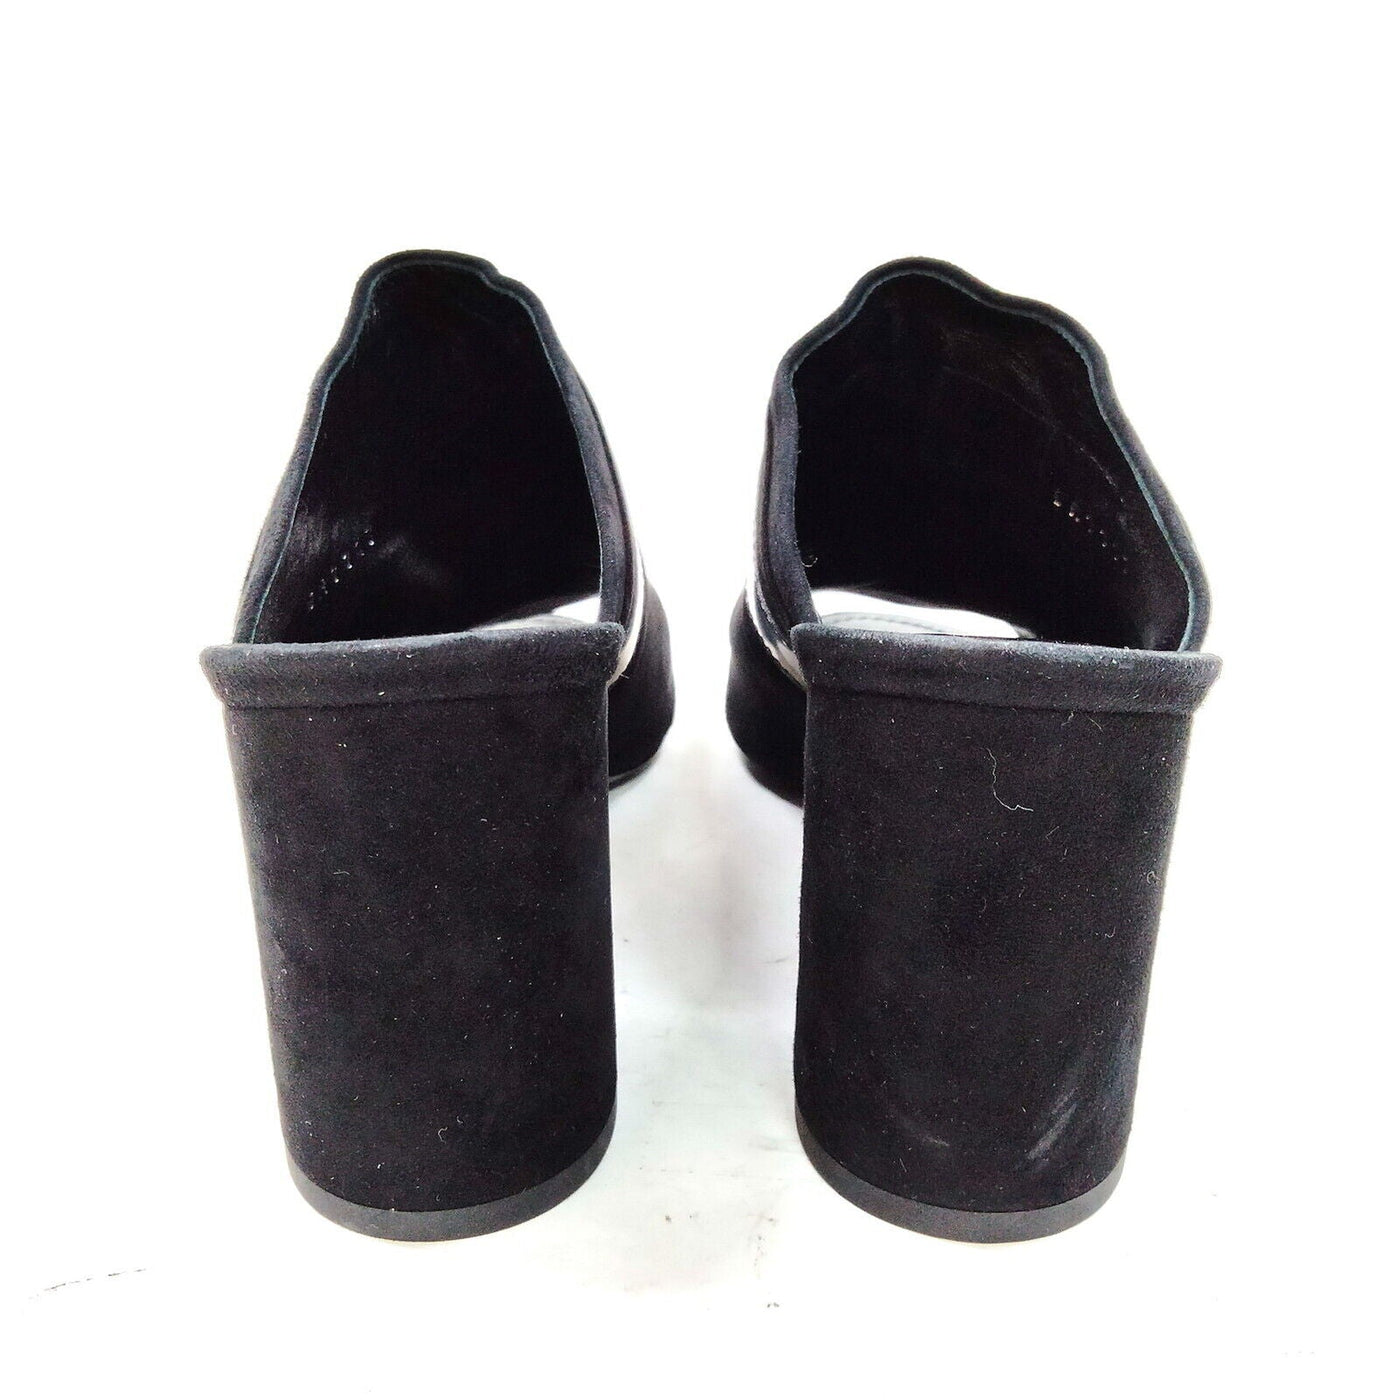 Louis Vuitton Black Suede Sandals - Luxury Cheaper